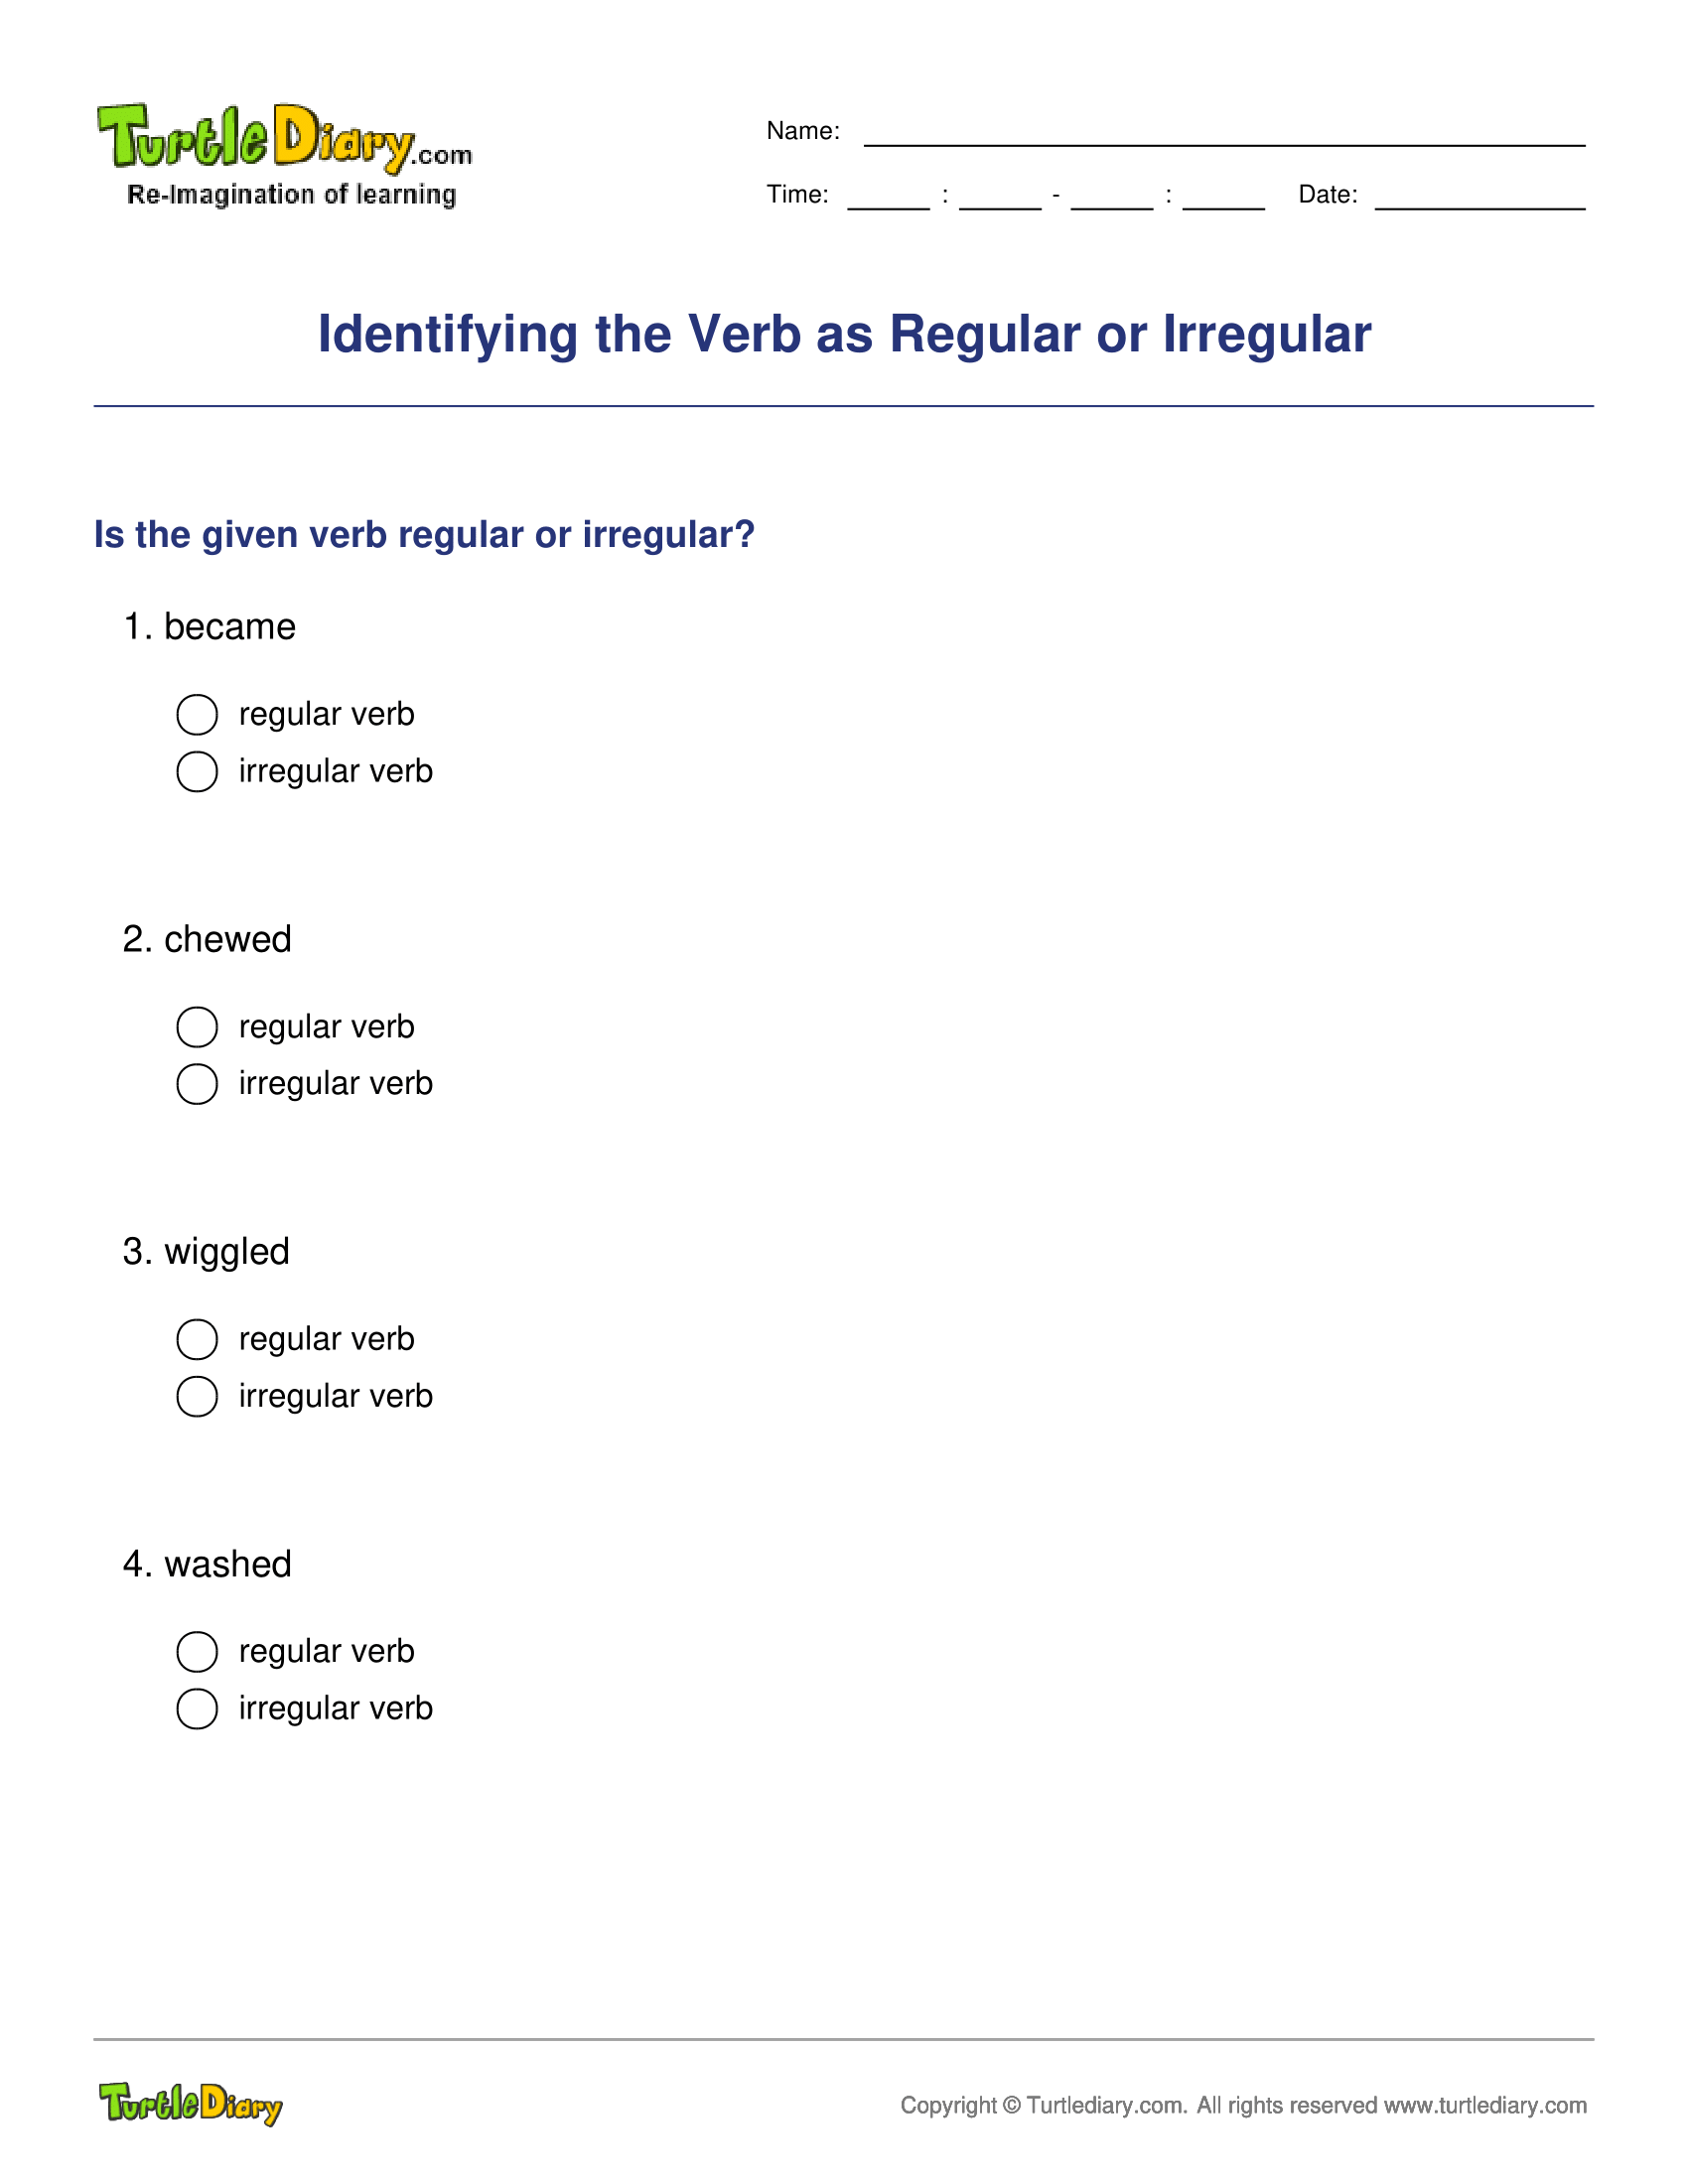 Identifying the Verb as Regular or Irregular